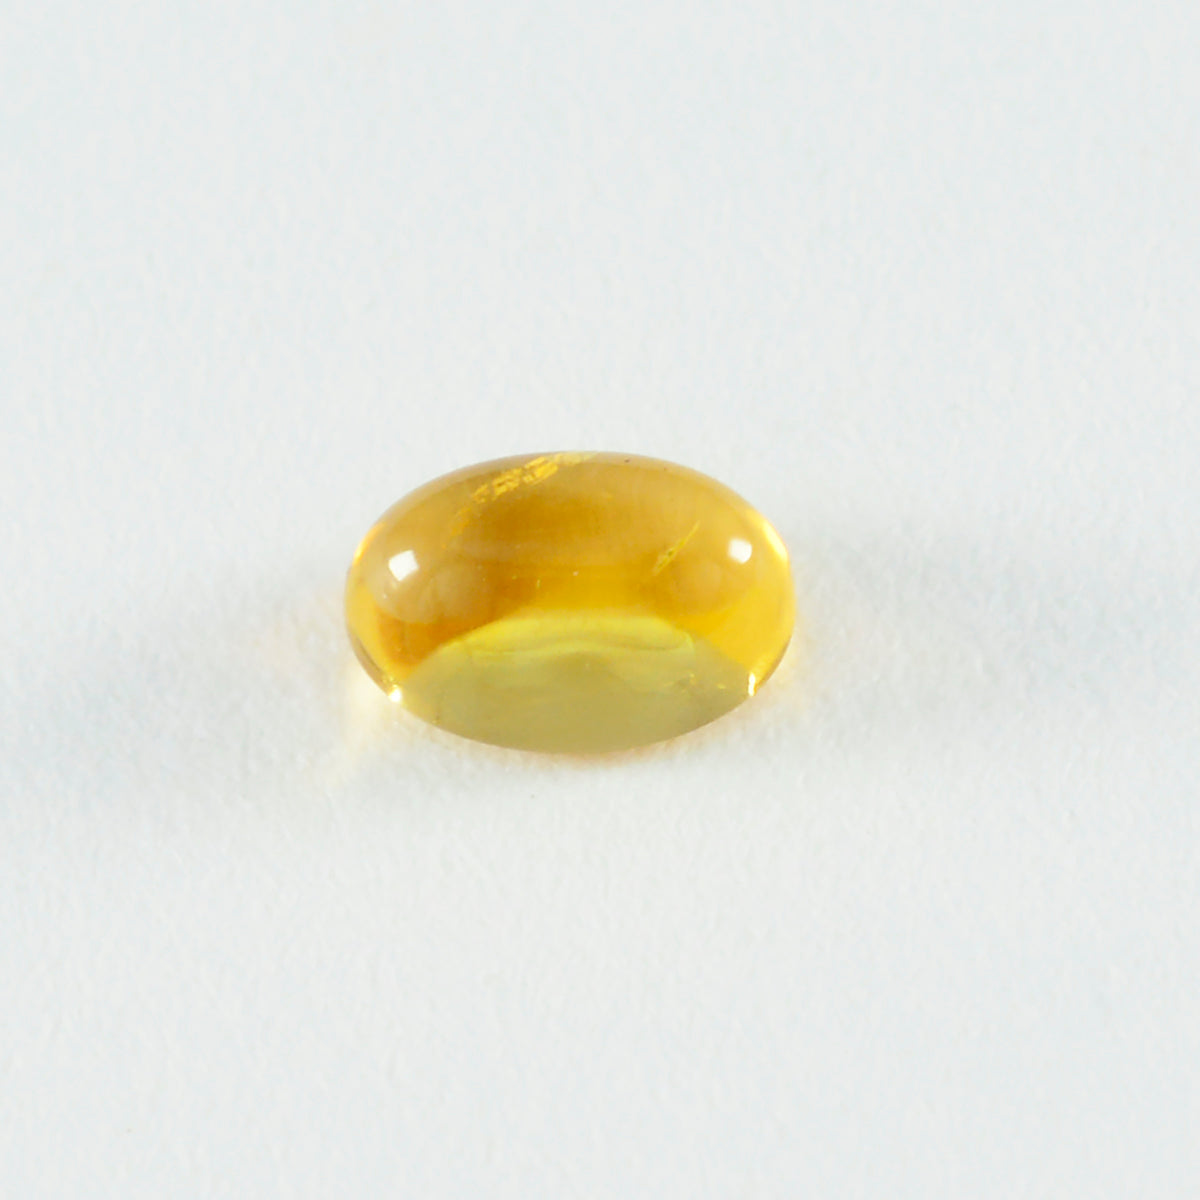 Riyogems 1PC gele citrien cabochon 10x12 mm ovale vorm mooie kwaliteit losse edelsteen